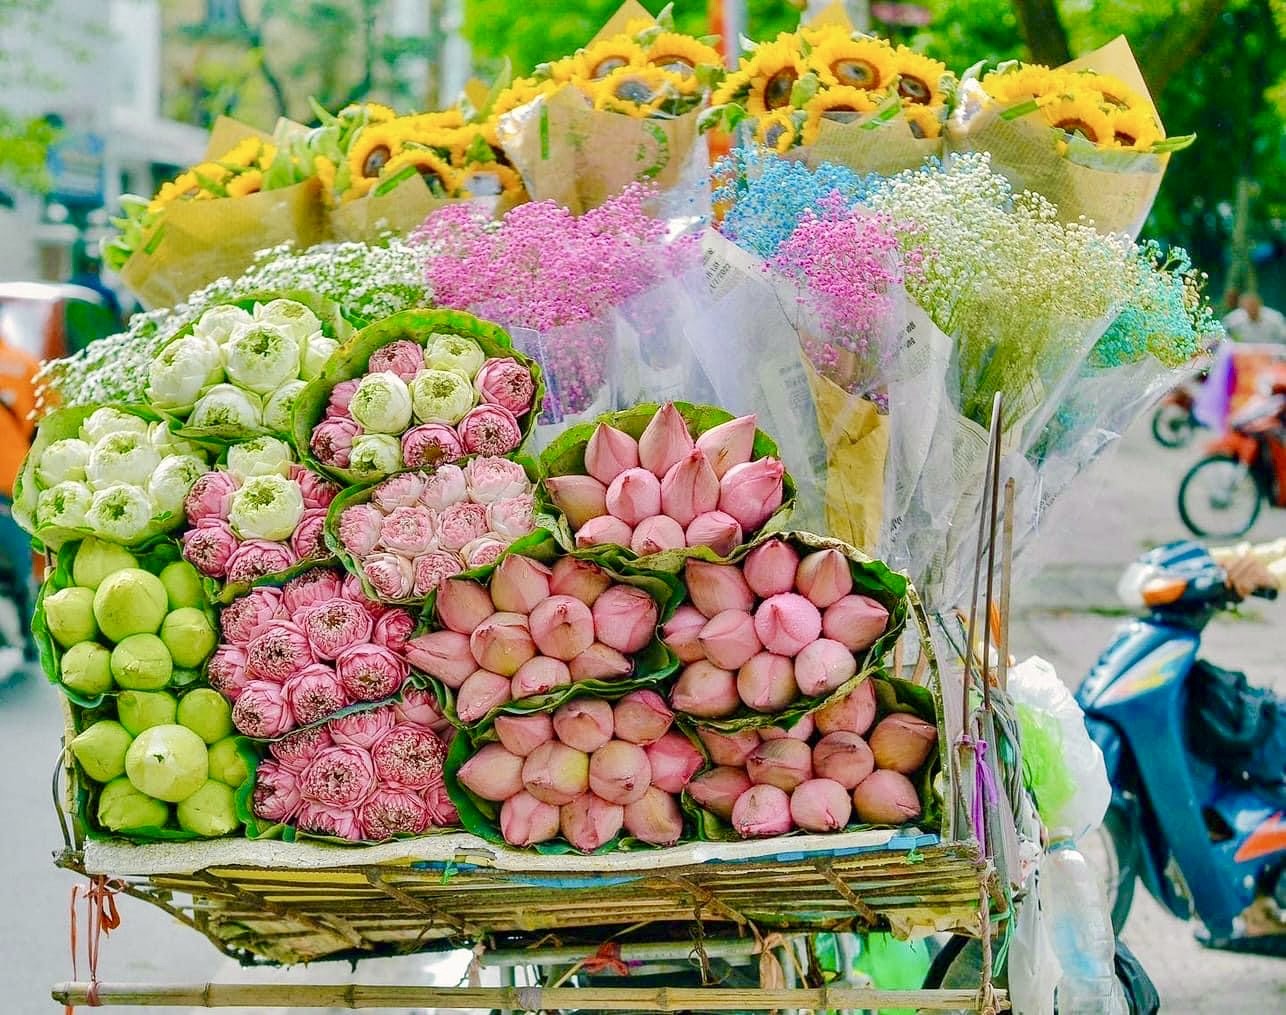 Xe hàng hoa đẹp ngỡ ngàng giữa phố phường Hà Nội - Ảnh 6.